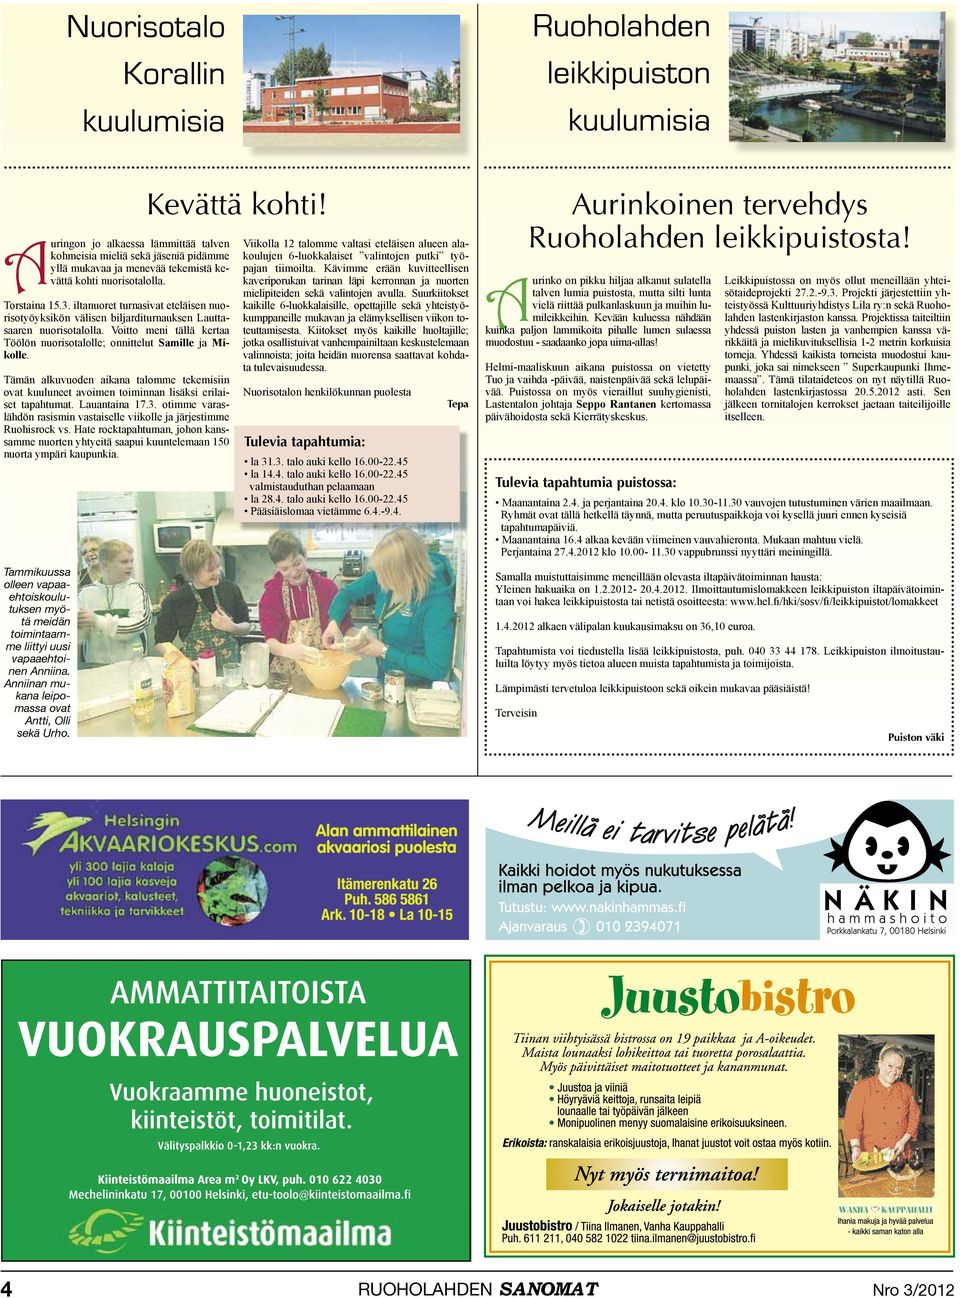 Voitto meni tällä kertaa Töölön nuorisotalolle; onnittelut Samille ja Mikolle. Tämän alkuvuoden aikana talomme tekemisiin ovat kuuluneet avoimen toiminnan lisäksi erilaiset tapahtumat. Lauantaina 17.